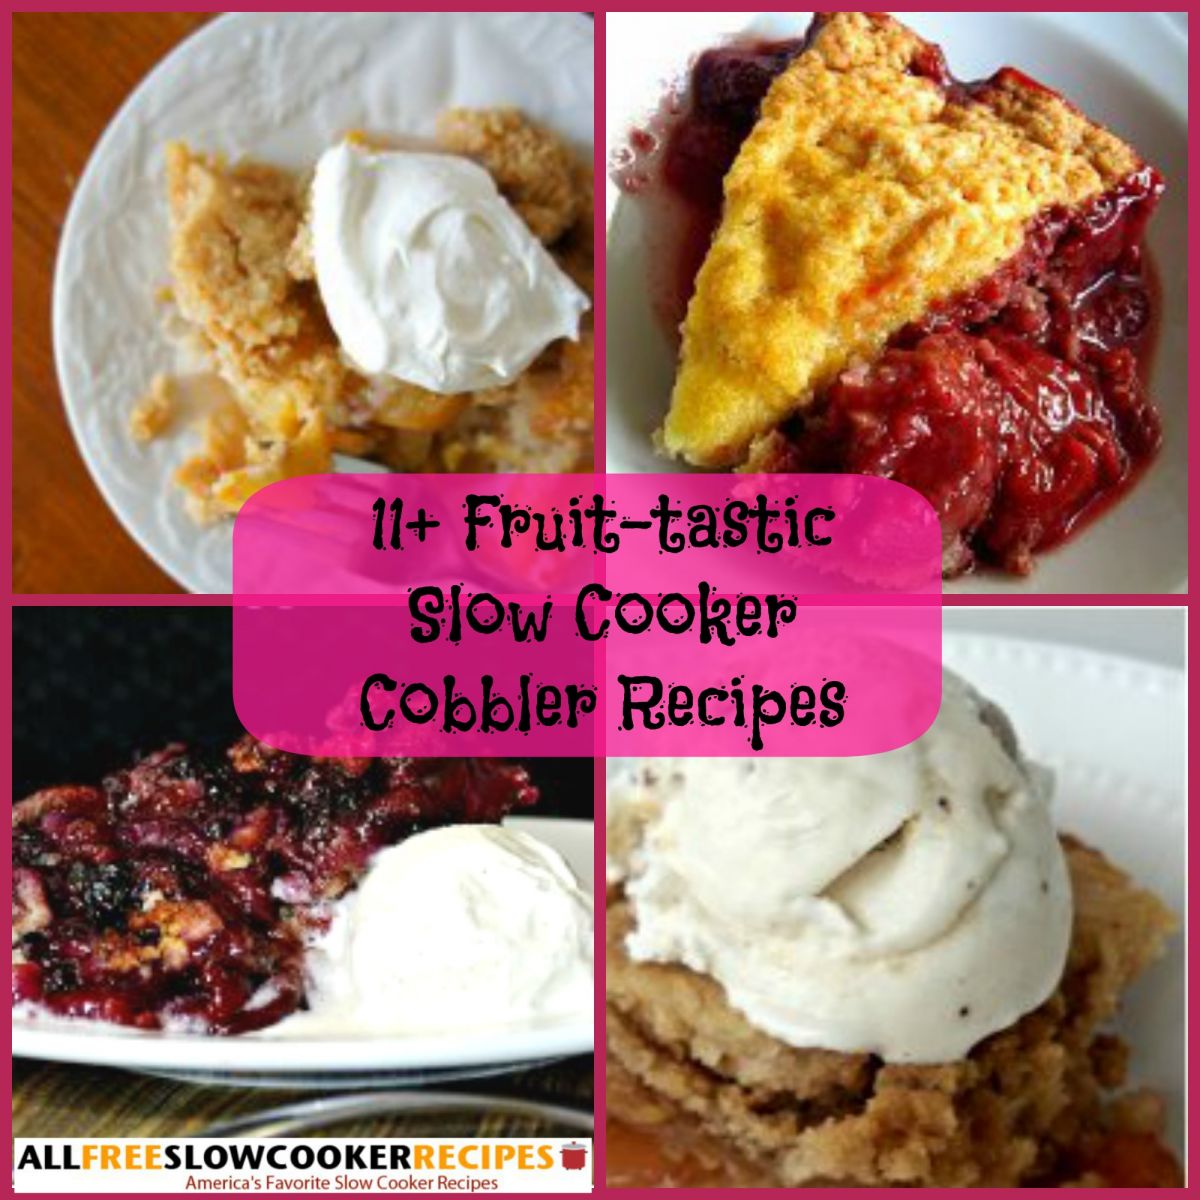 Slow Cooker Cobbler Recipes